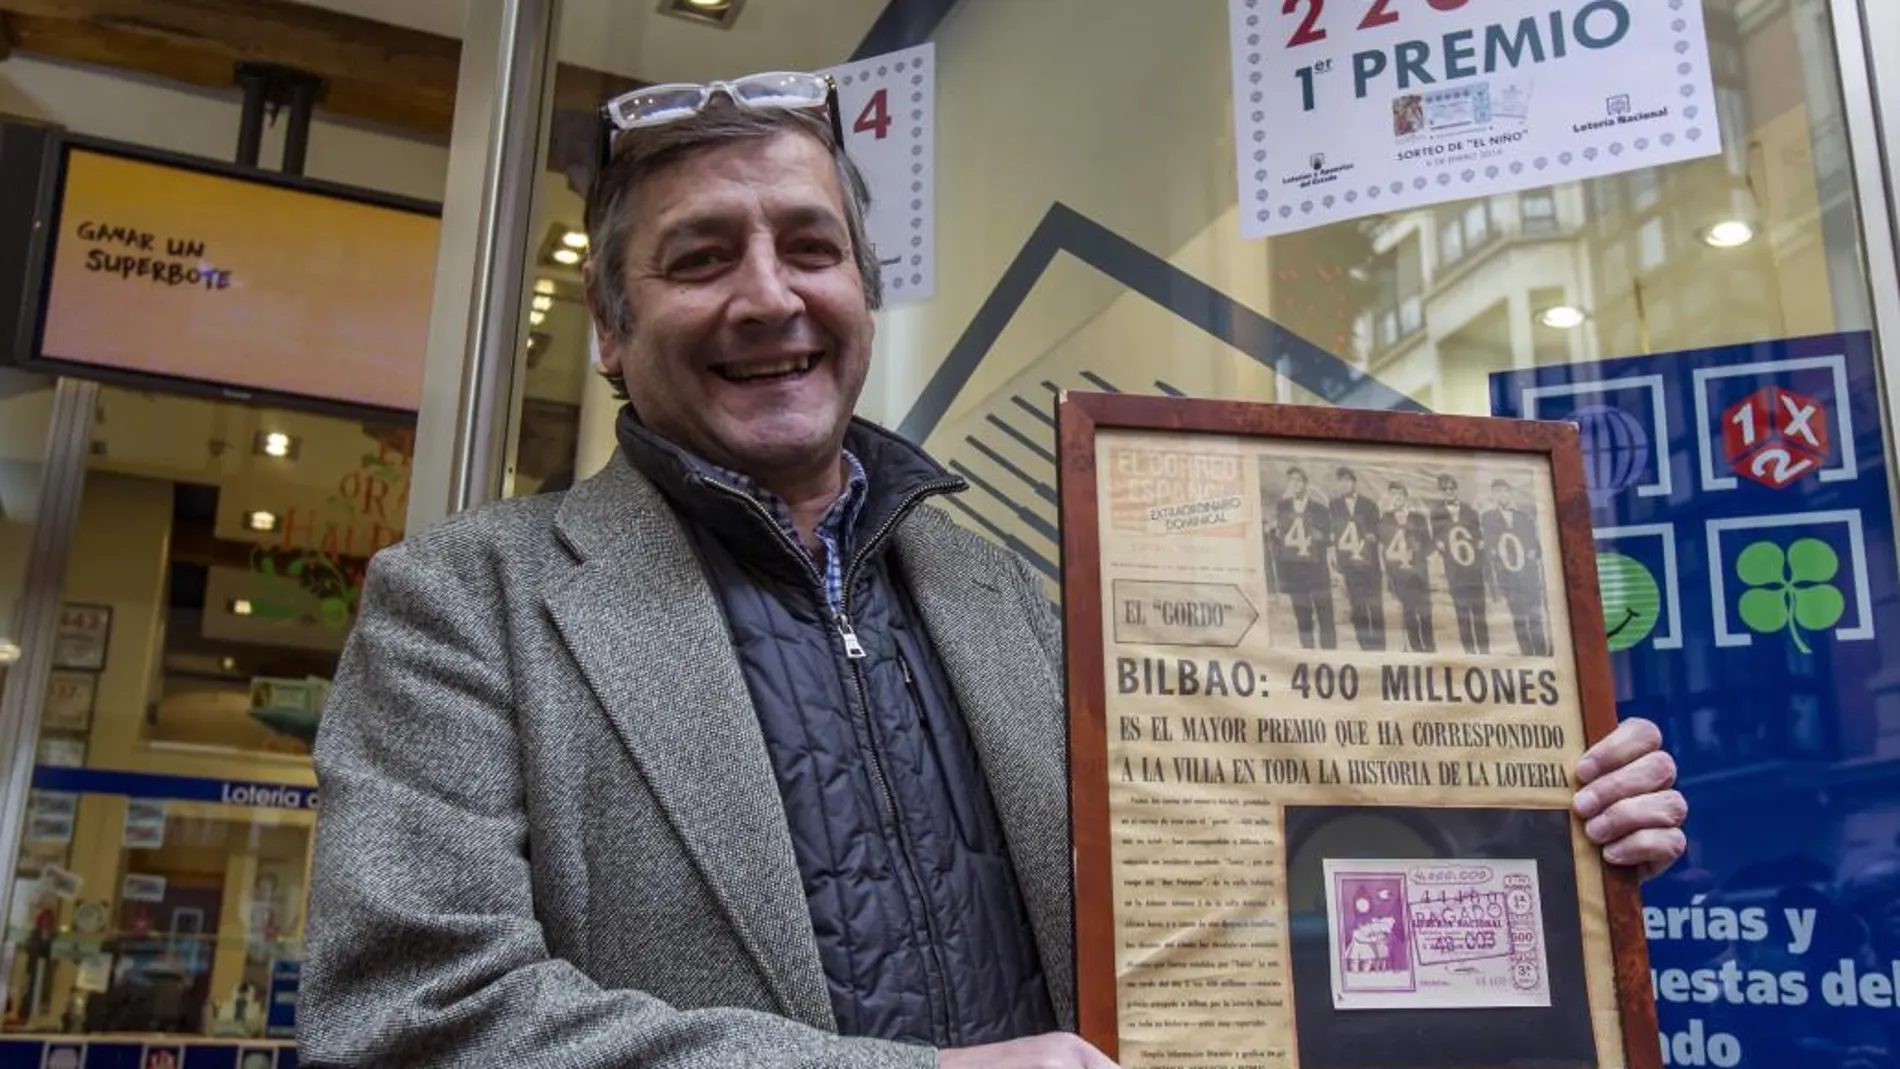 El titular de la administración número 25 de Bilbao "Lotería los 400 millones", Iñigo Gómez Barrengoa, celebra los décimos vendidos del primer premio